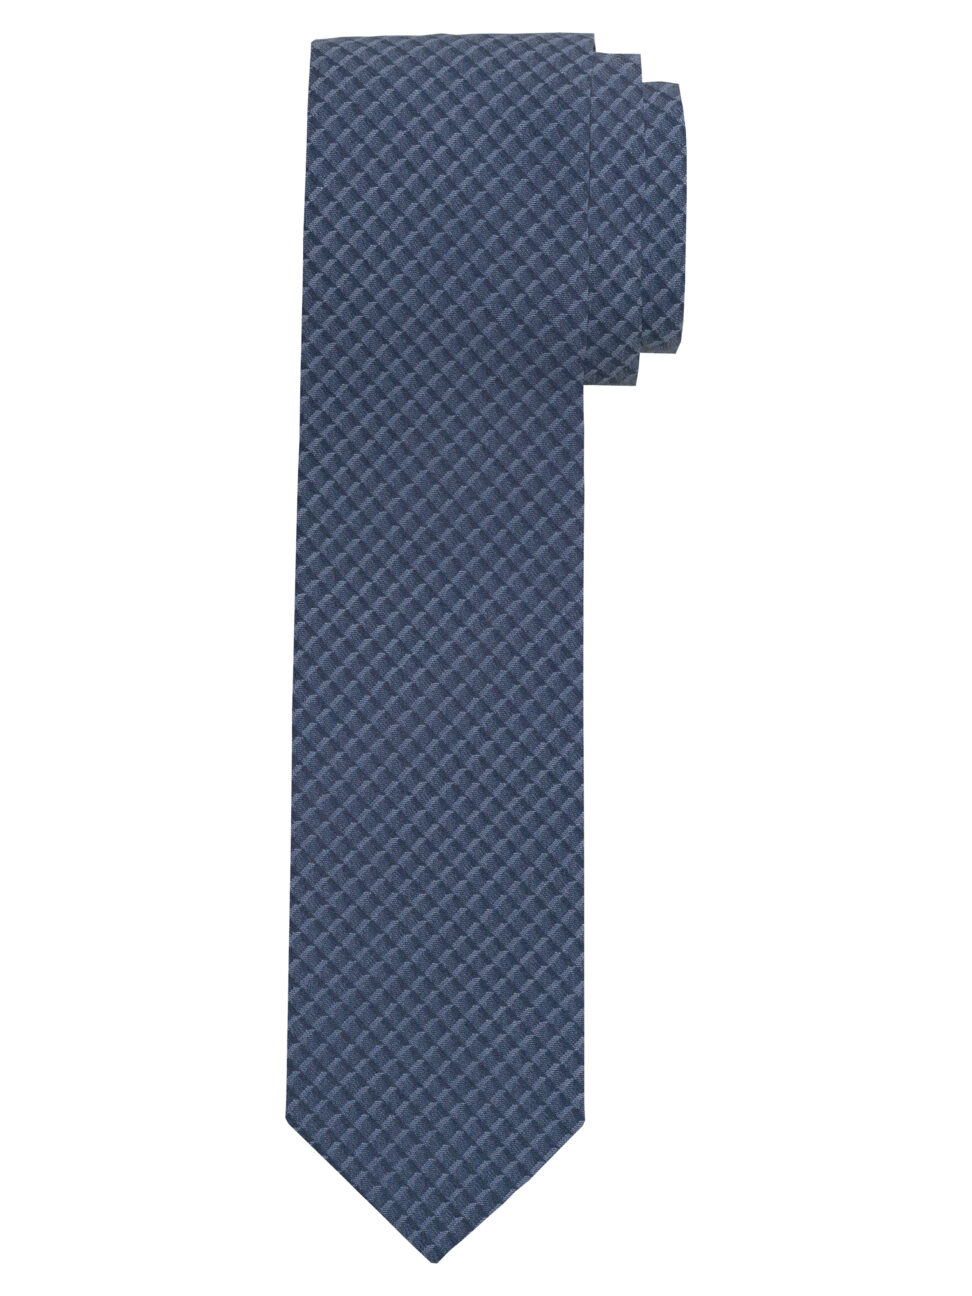 Krawat Jedwabny OLYMP niebieskie wzorki 17910017 Slim (6,5 cm)